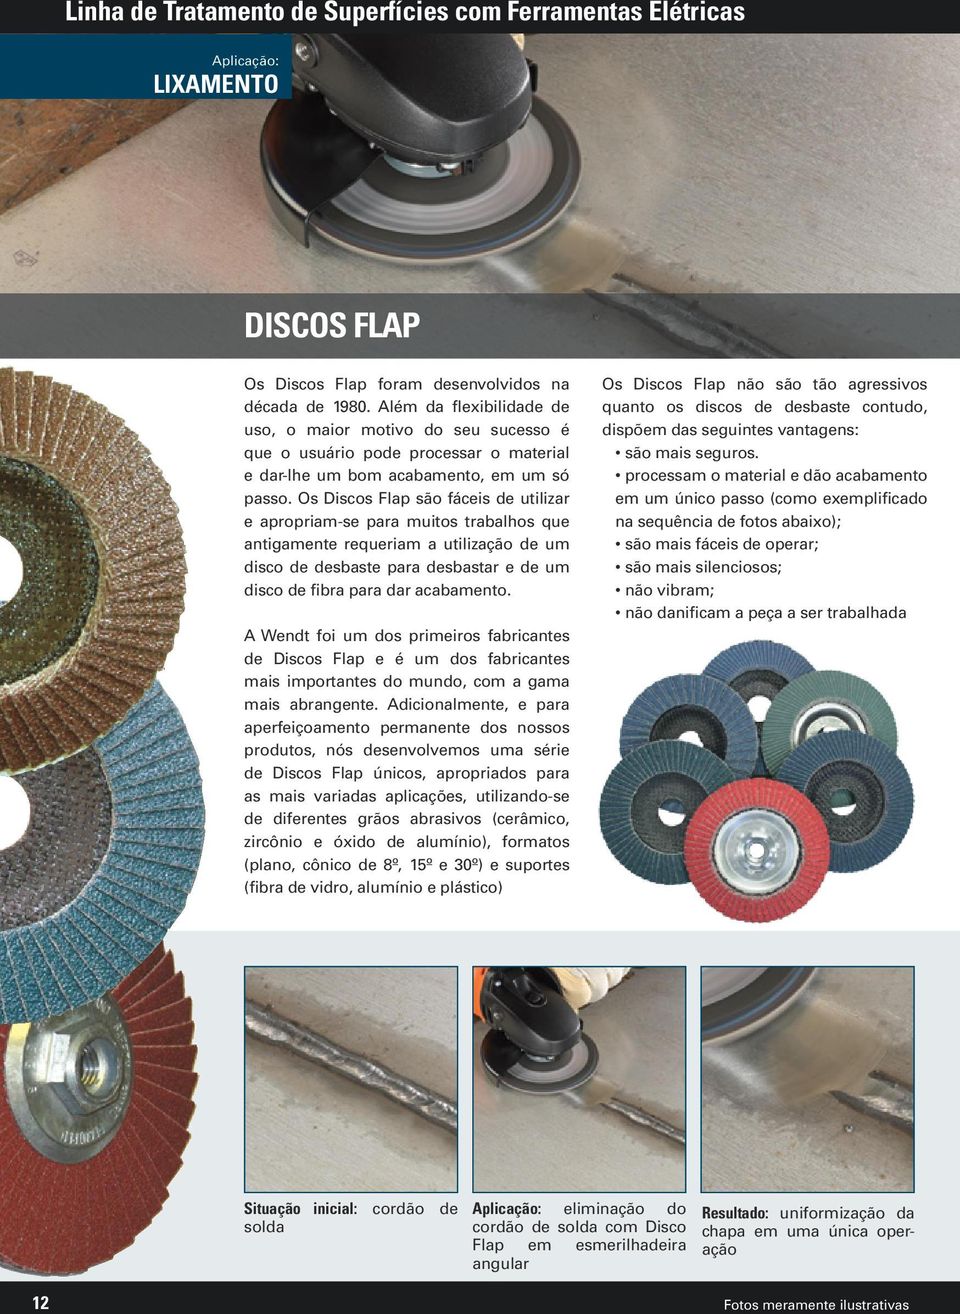 Os Discos Flap são fáceis de utilizar e apropriam-se para muitos trabalhos que antigamente requeriam a utilização de um disco de desbaste para desbastar e de um disco de fibra para dar acabamento.